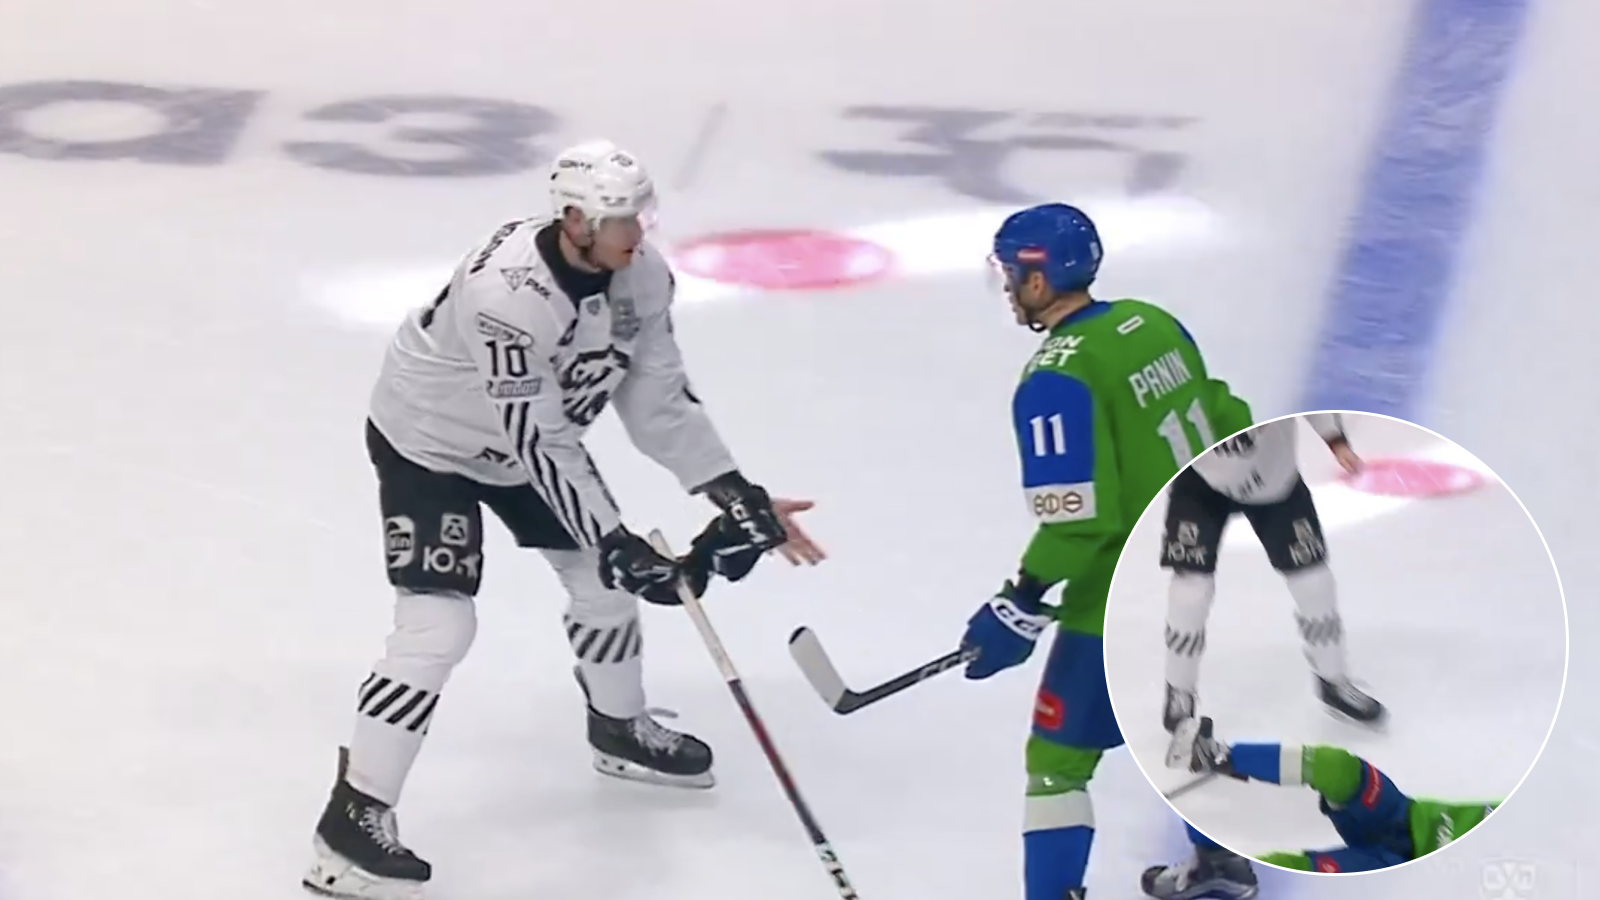 Un joueur de la KHL passe le K.O à son adversaire avec un seul coup